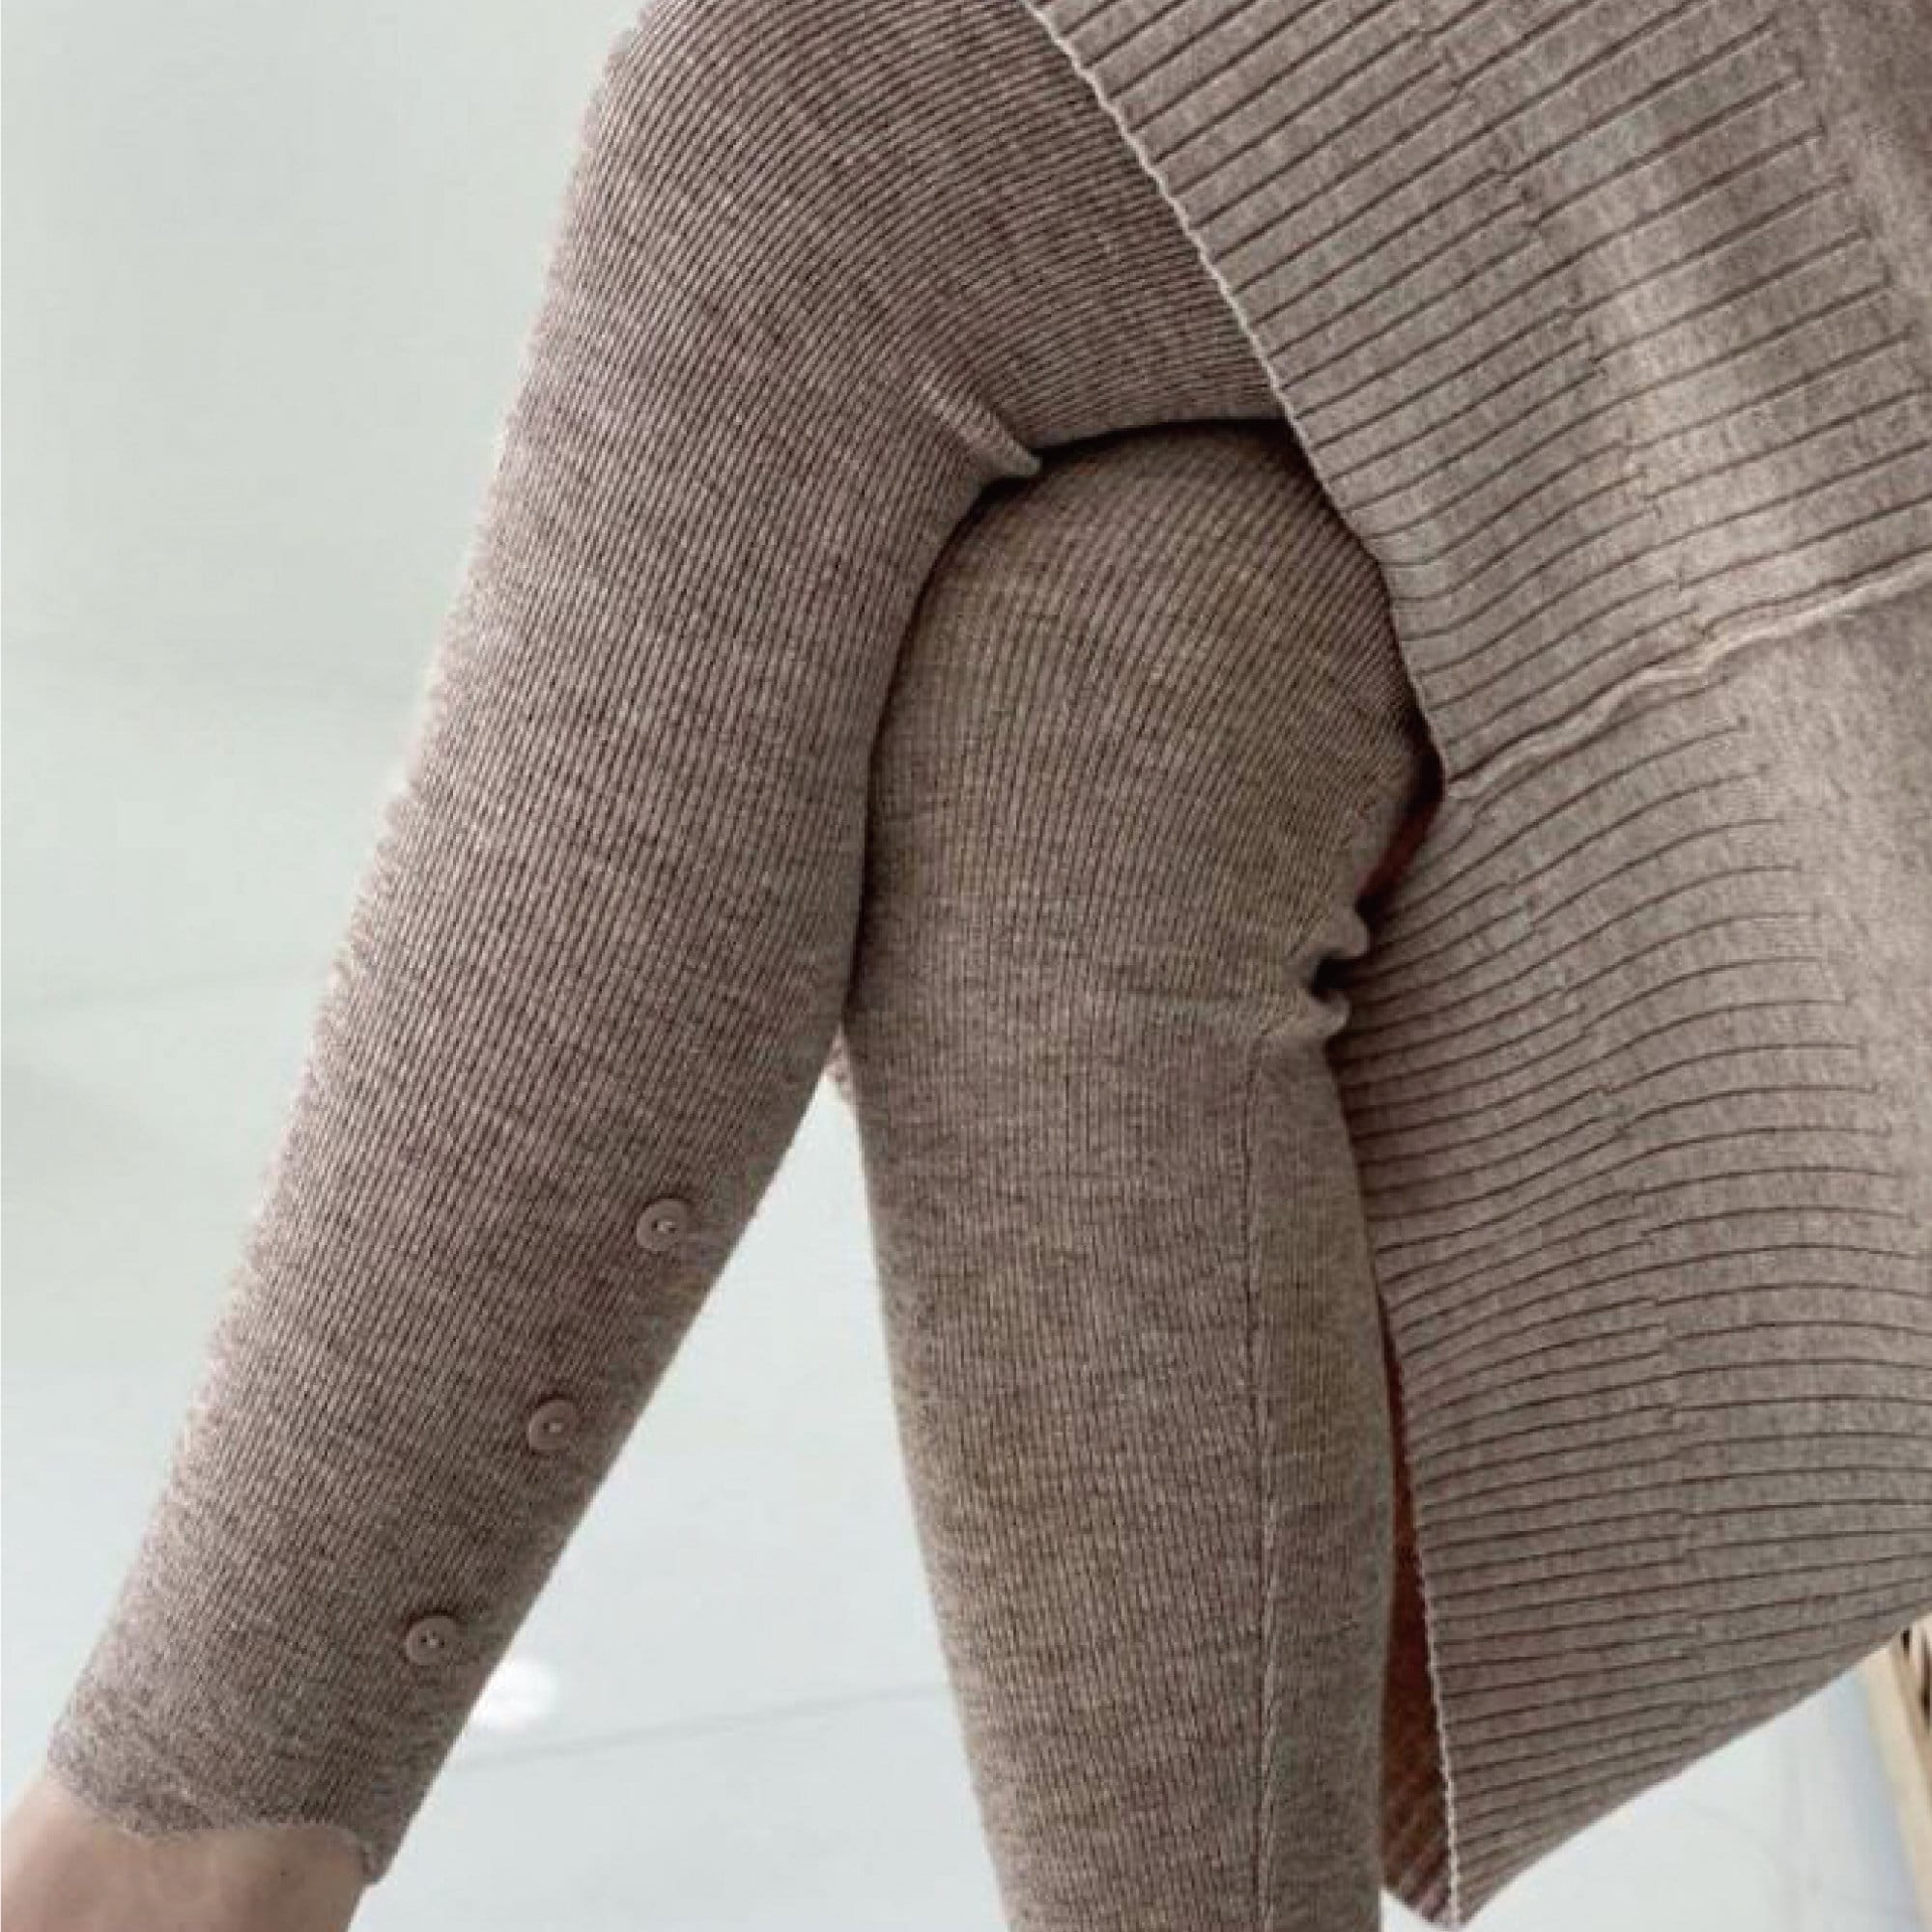 Cashmere Blended Wool Leggings / Leggings for Women / Extra Soft